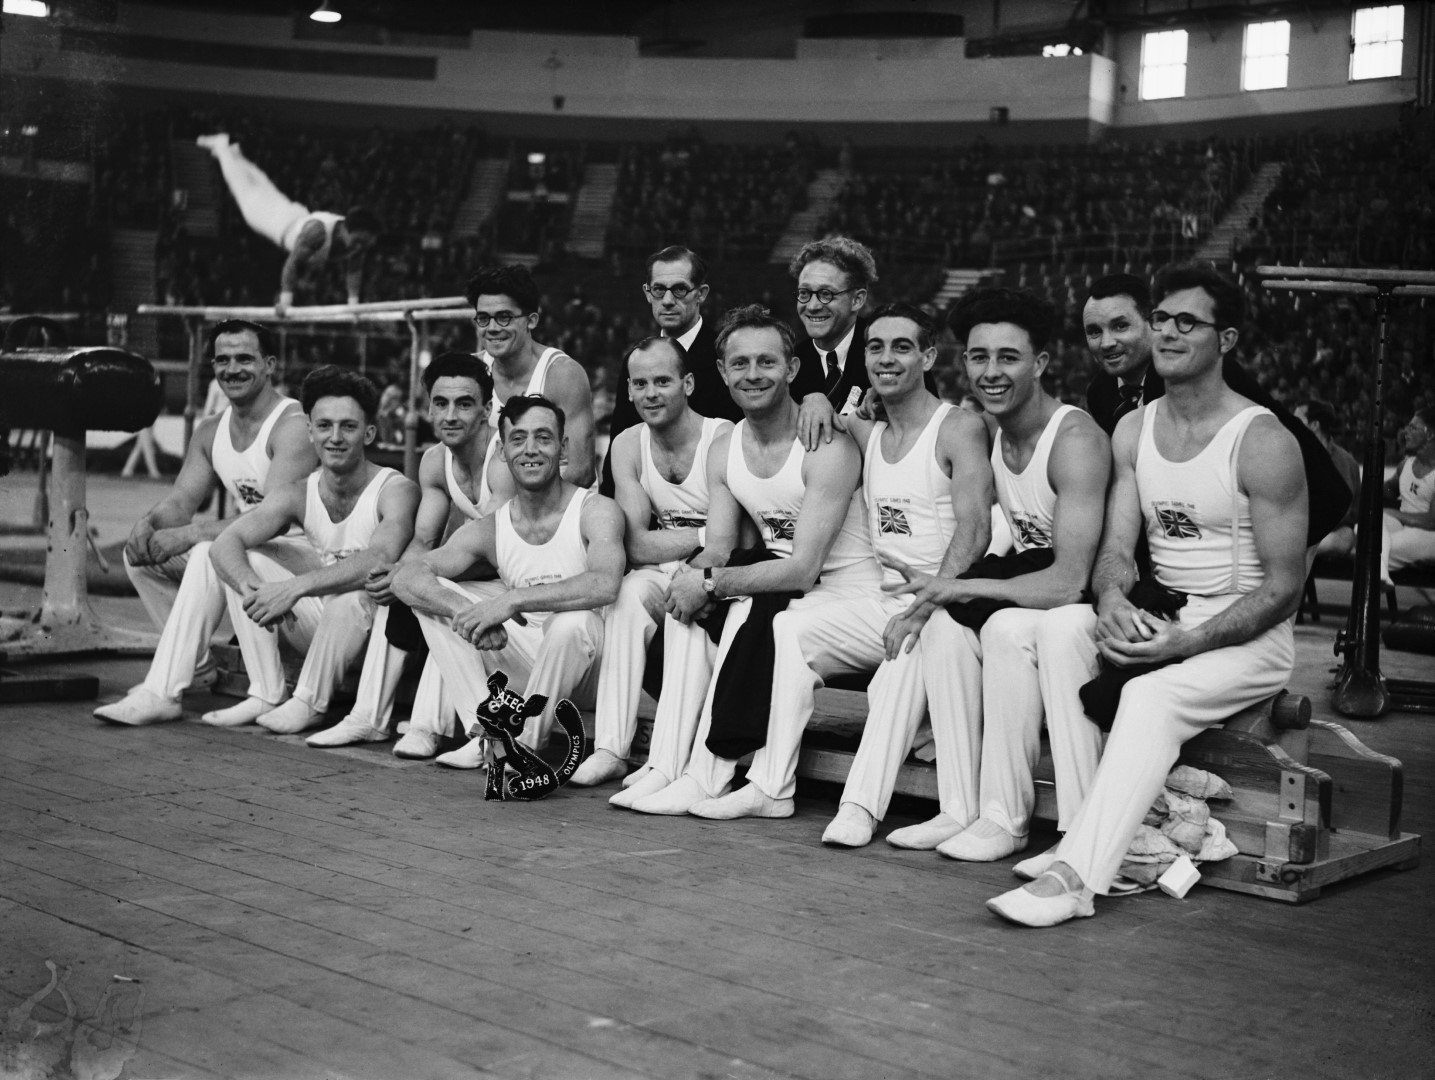 Отборът по спортна гимнастика на Великобритания през 1948 г. С огромна заслуга за подготовката му е германецът Банц, който дори се появява на отборната снимка преди игрите (крайният вдясно)